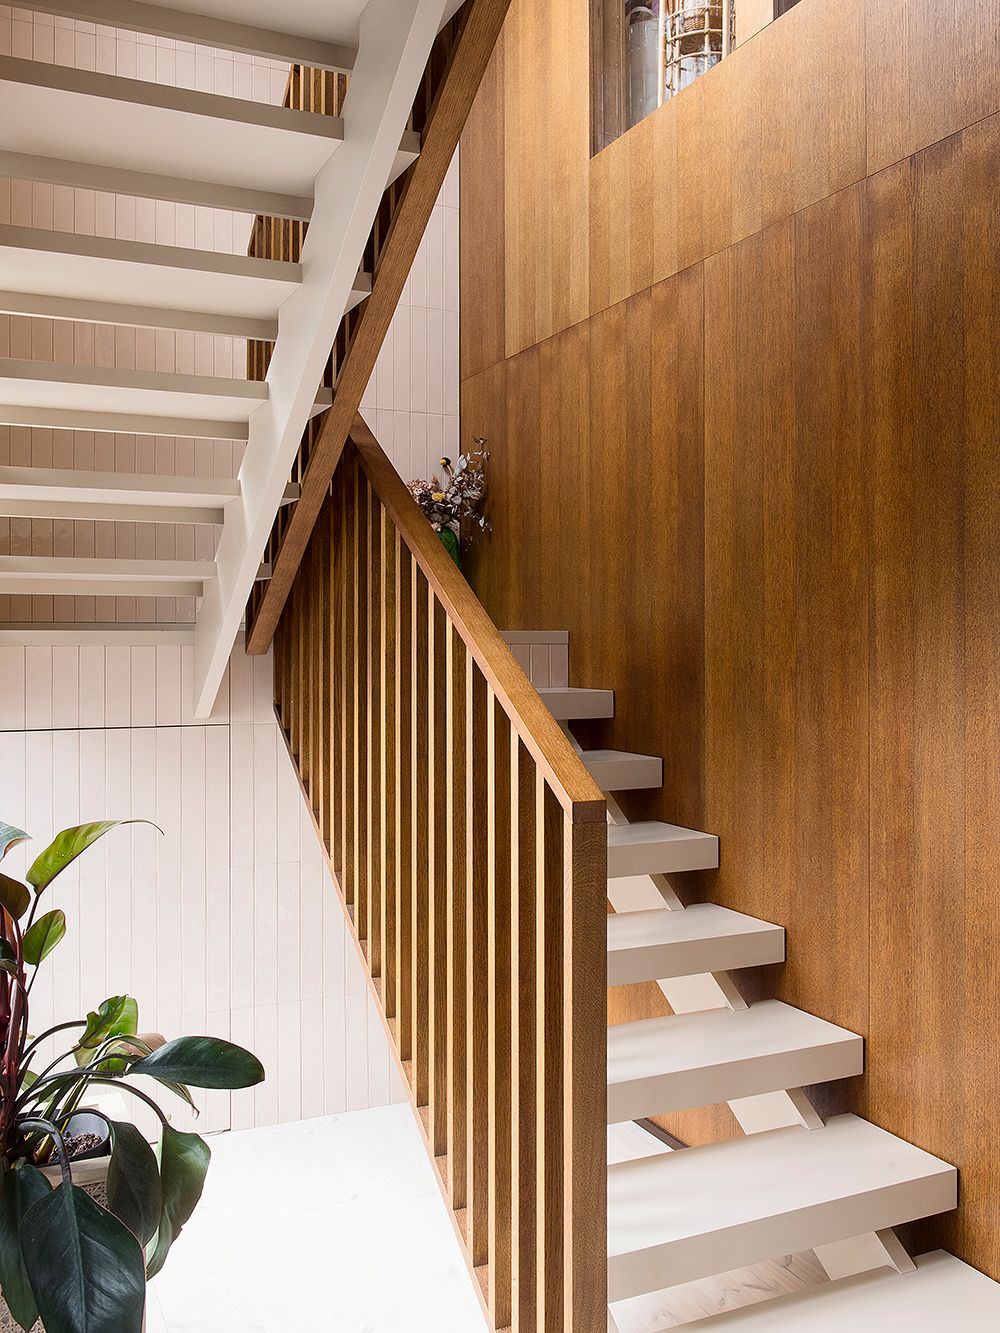 Wooden stairwell